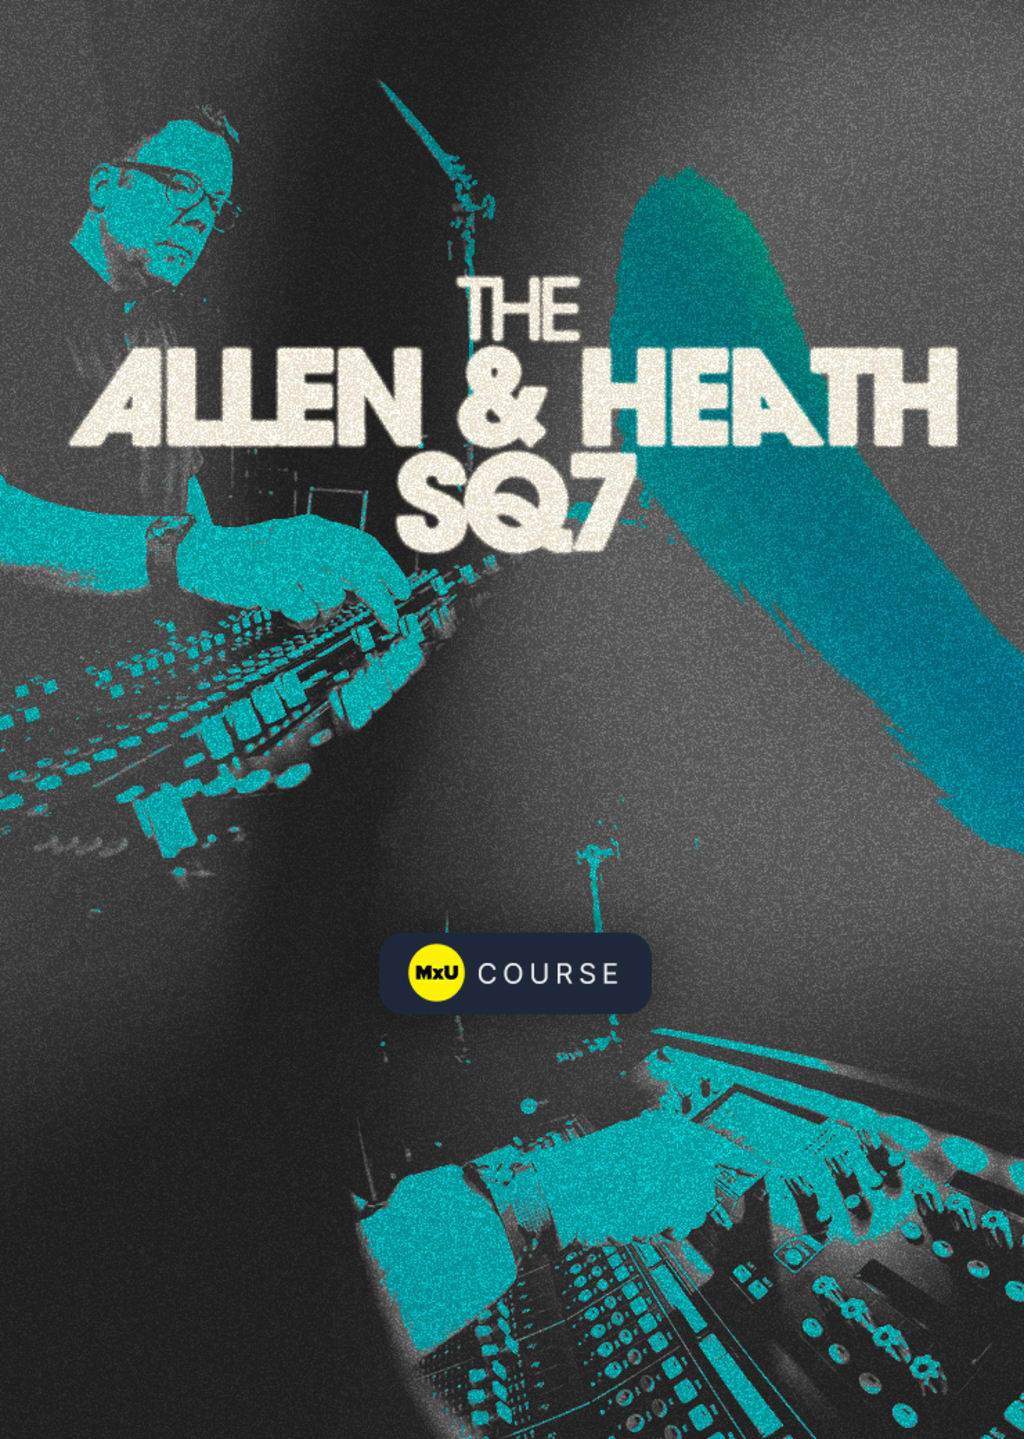 The Allen & Heath SQ7